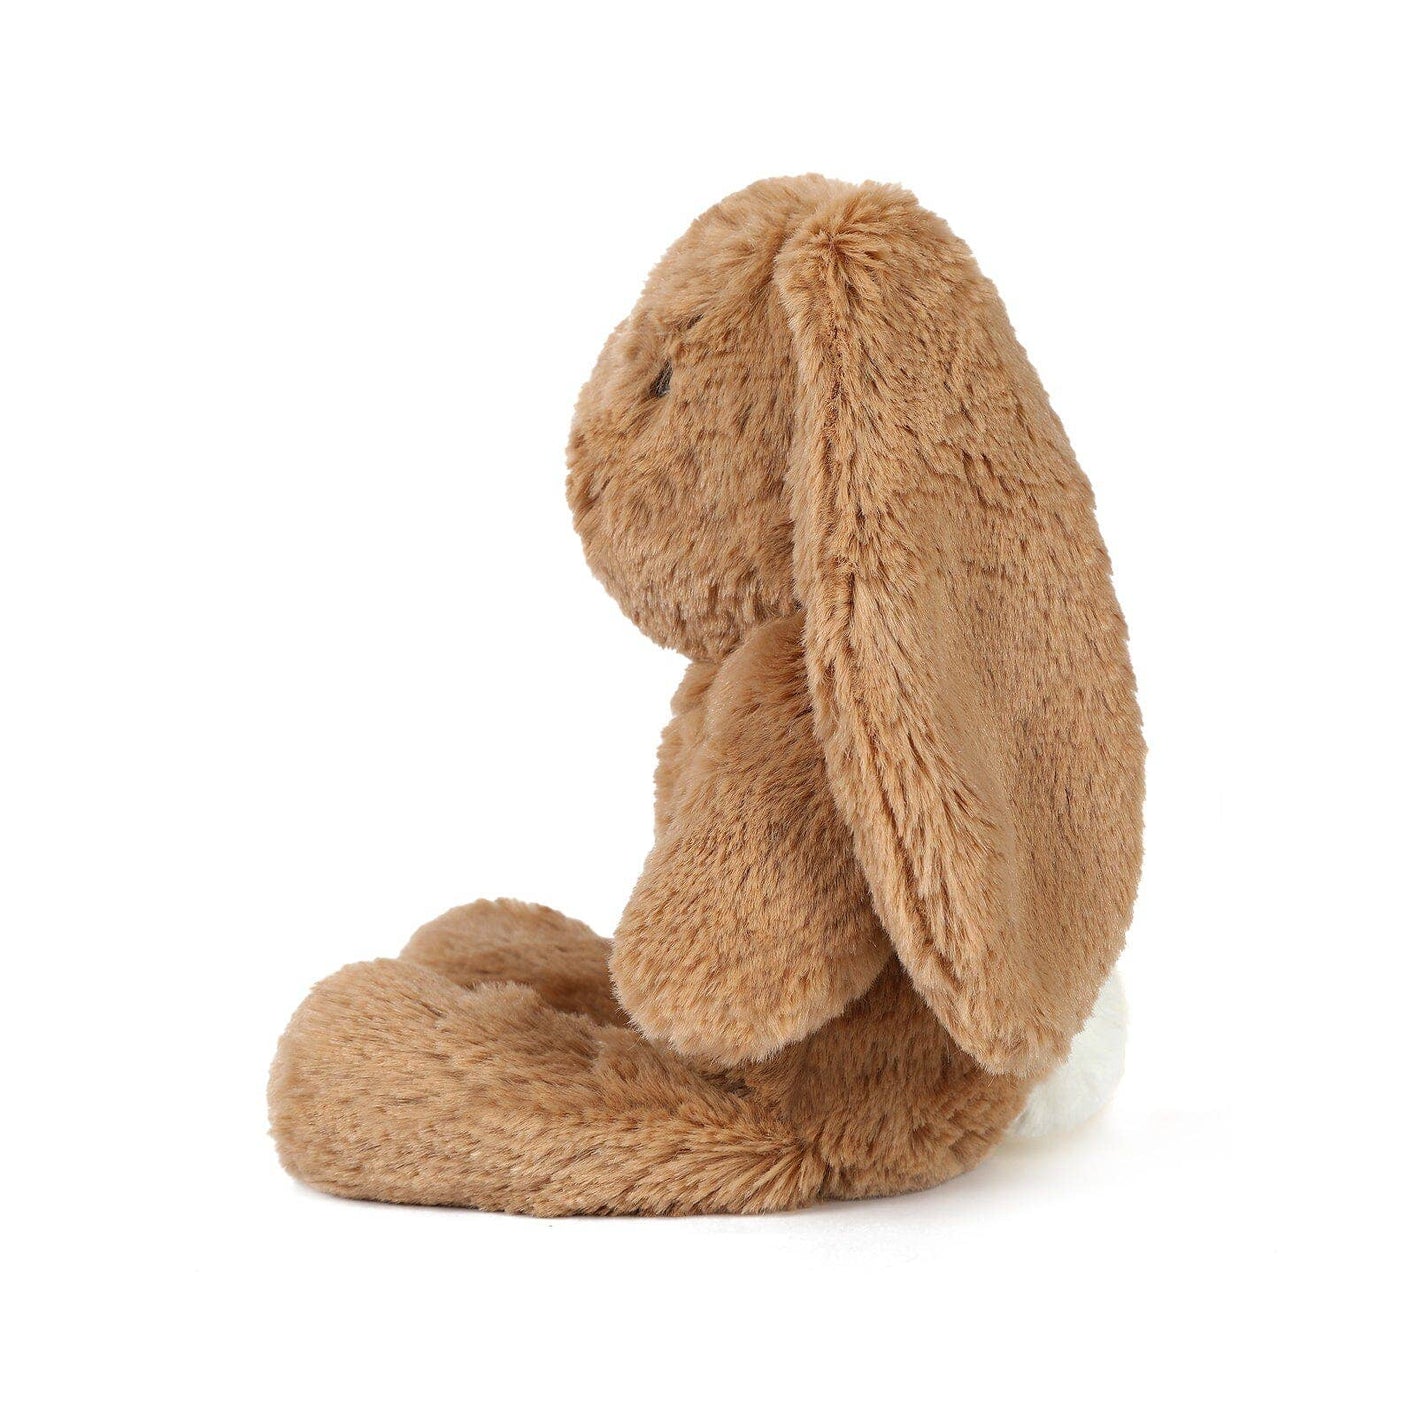 Little Bailey Caramel Bunny Soft Toy 25cm